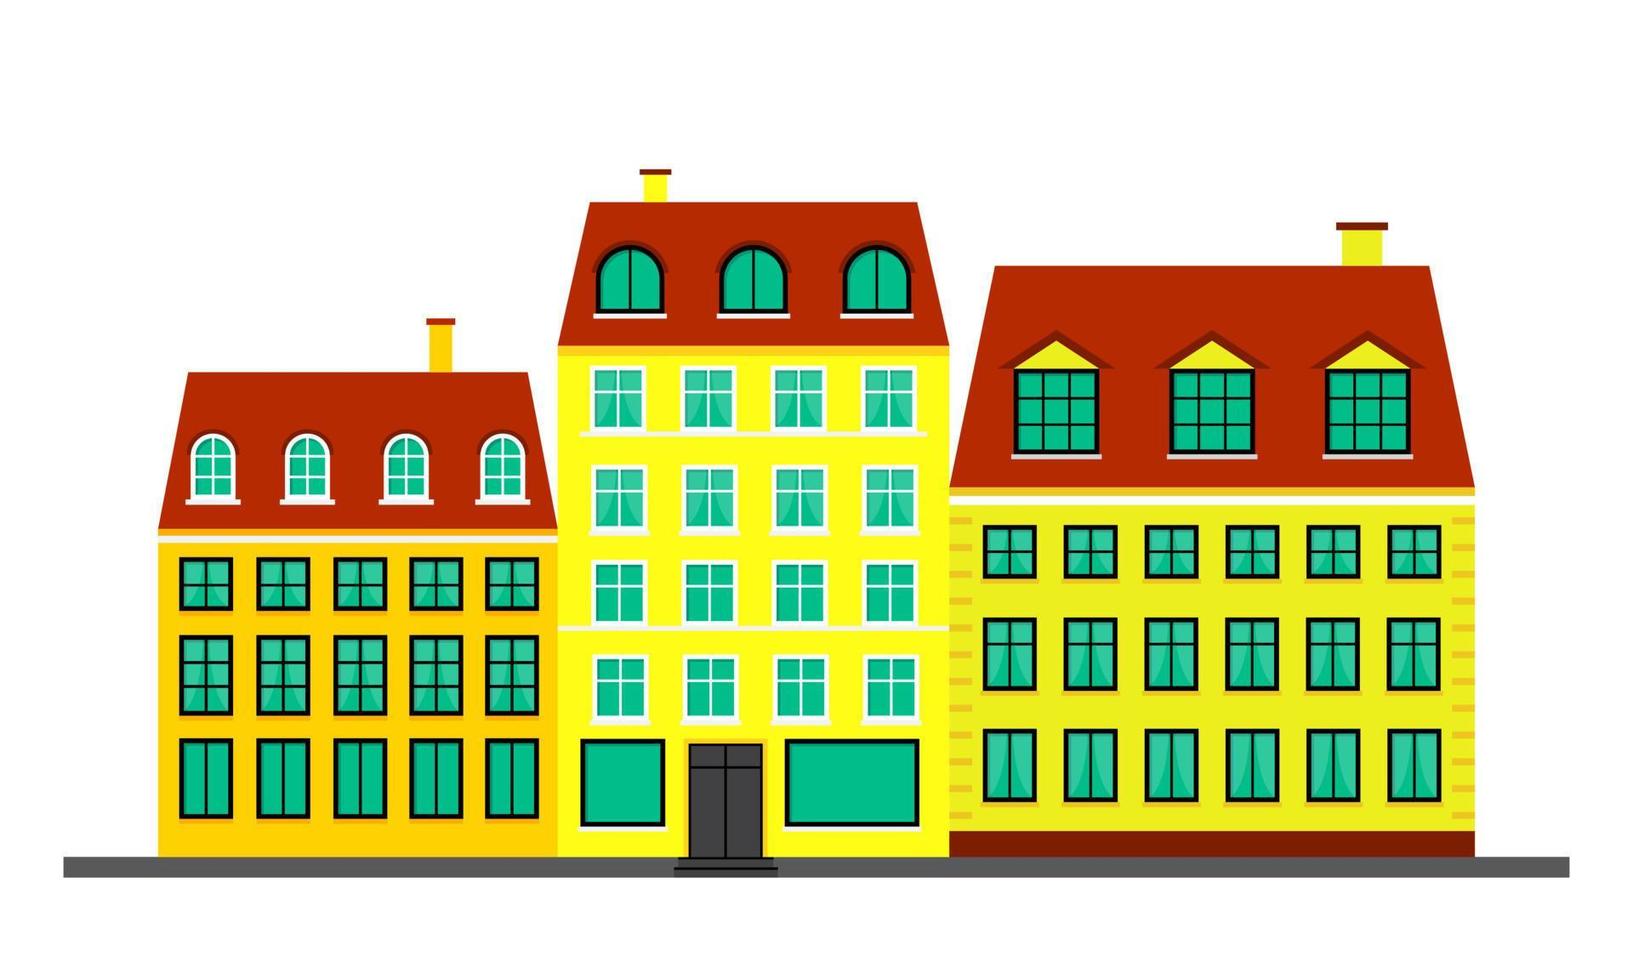 vida urbana. casas amarelas no estilo escandinavo. paisagem com fachadas de edifícios. ilustração vetorial isolada no fundo branco vetor